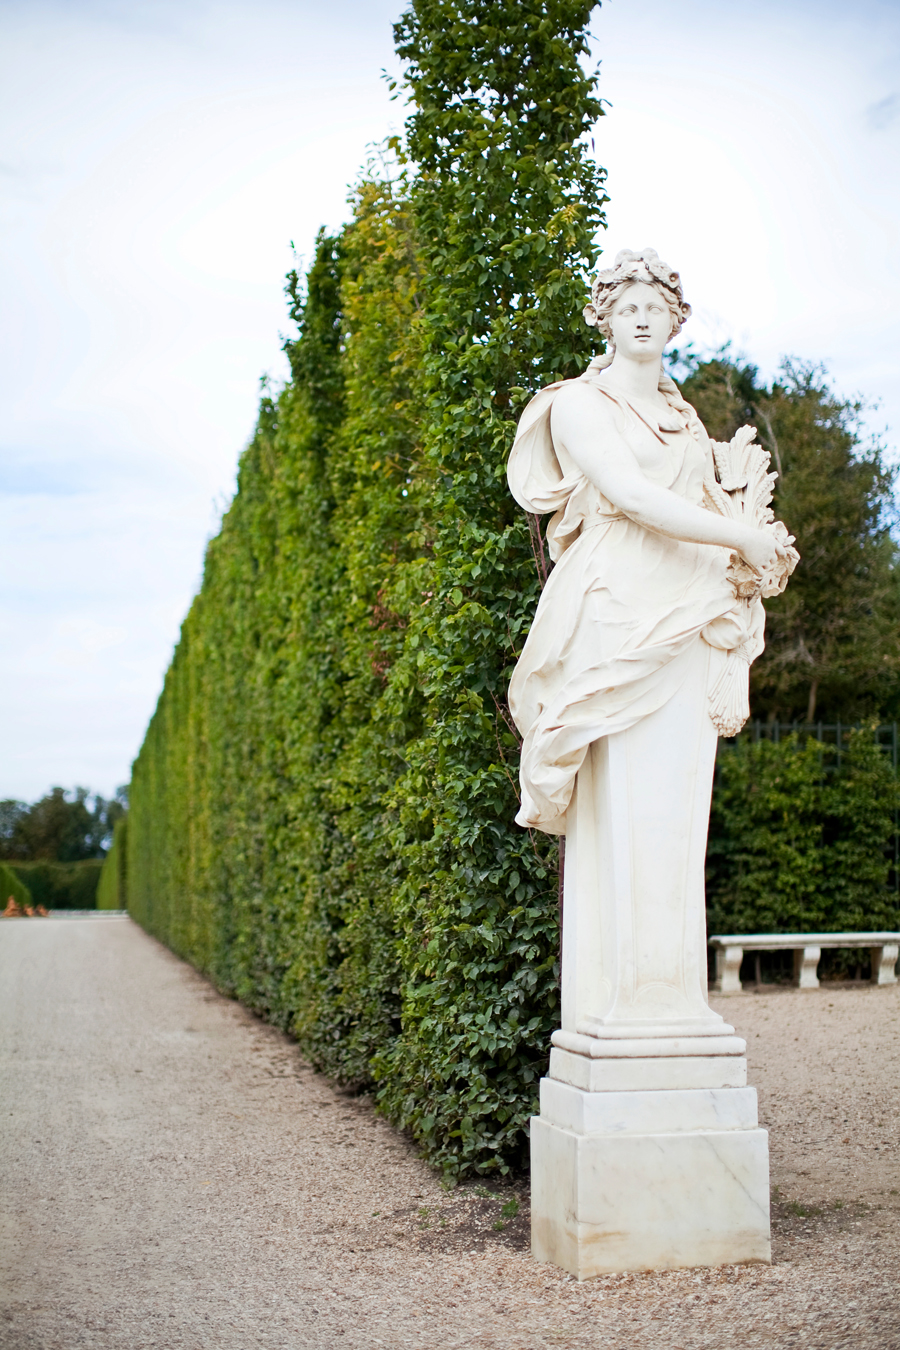 Sculpture of Versailles